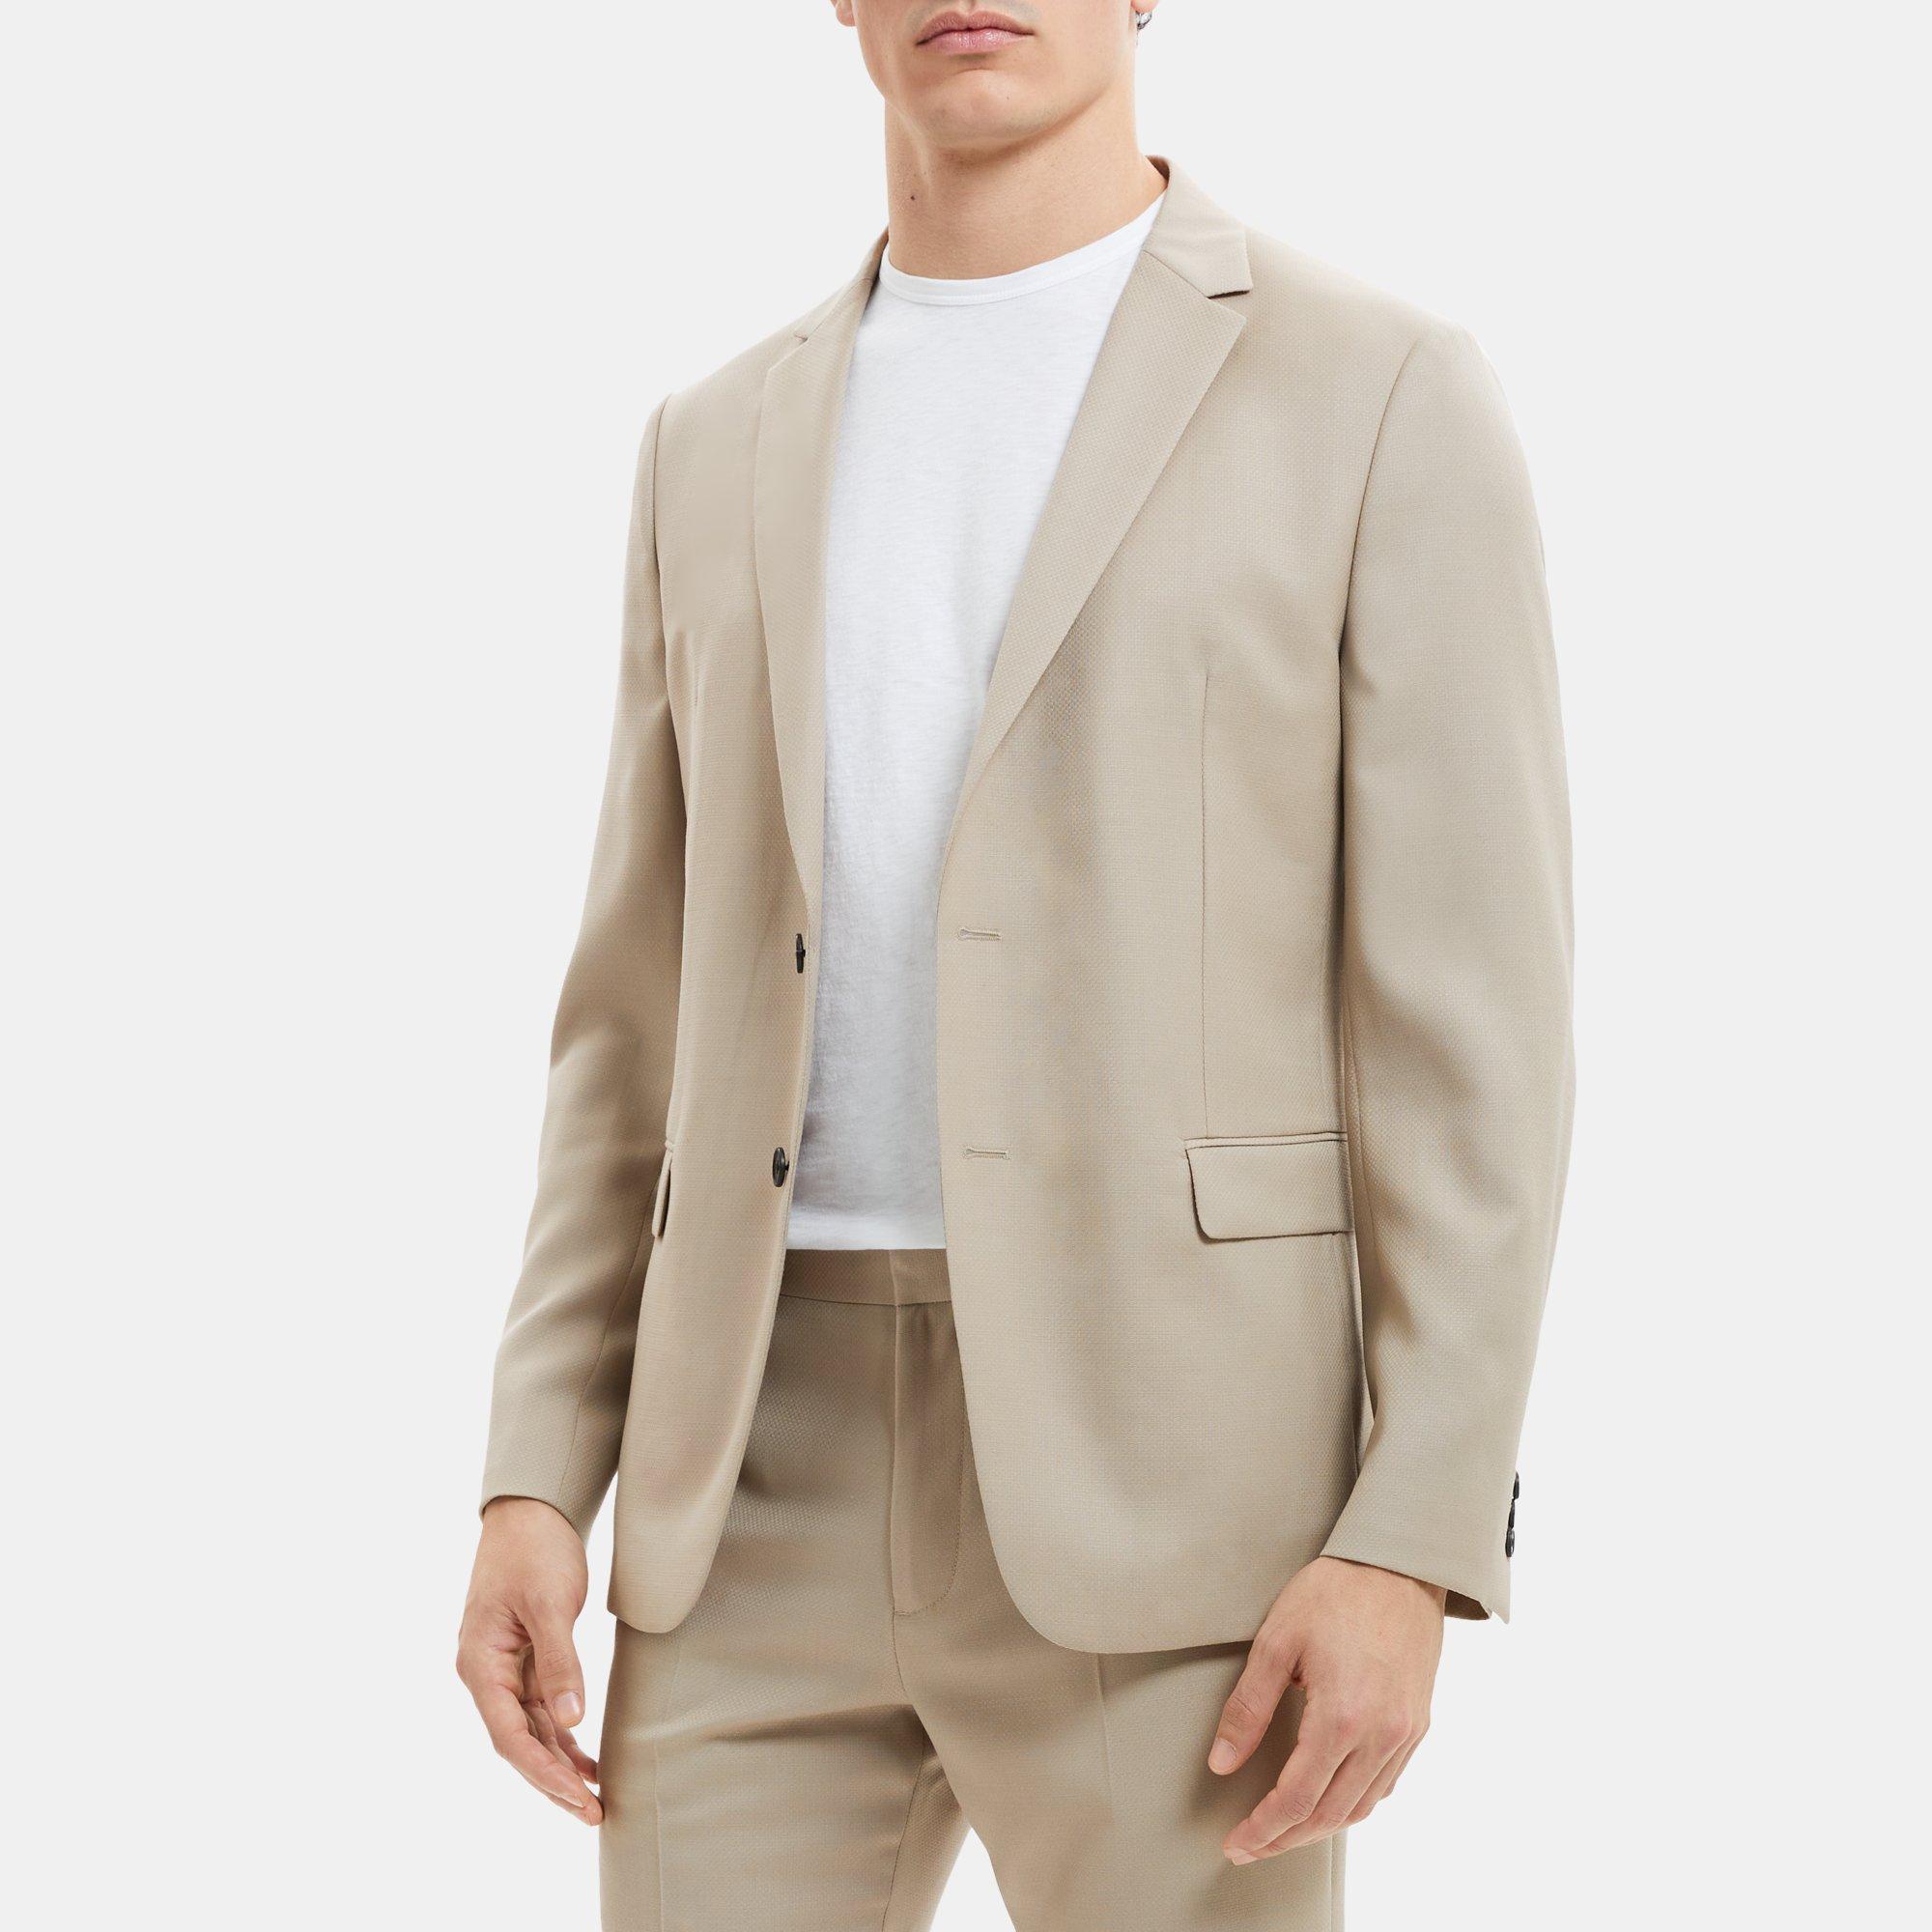 띠어리 자켓 Theory Unstructured Suit Jacket in Textured Wool,BEIGE STONE